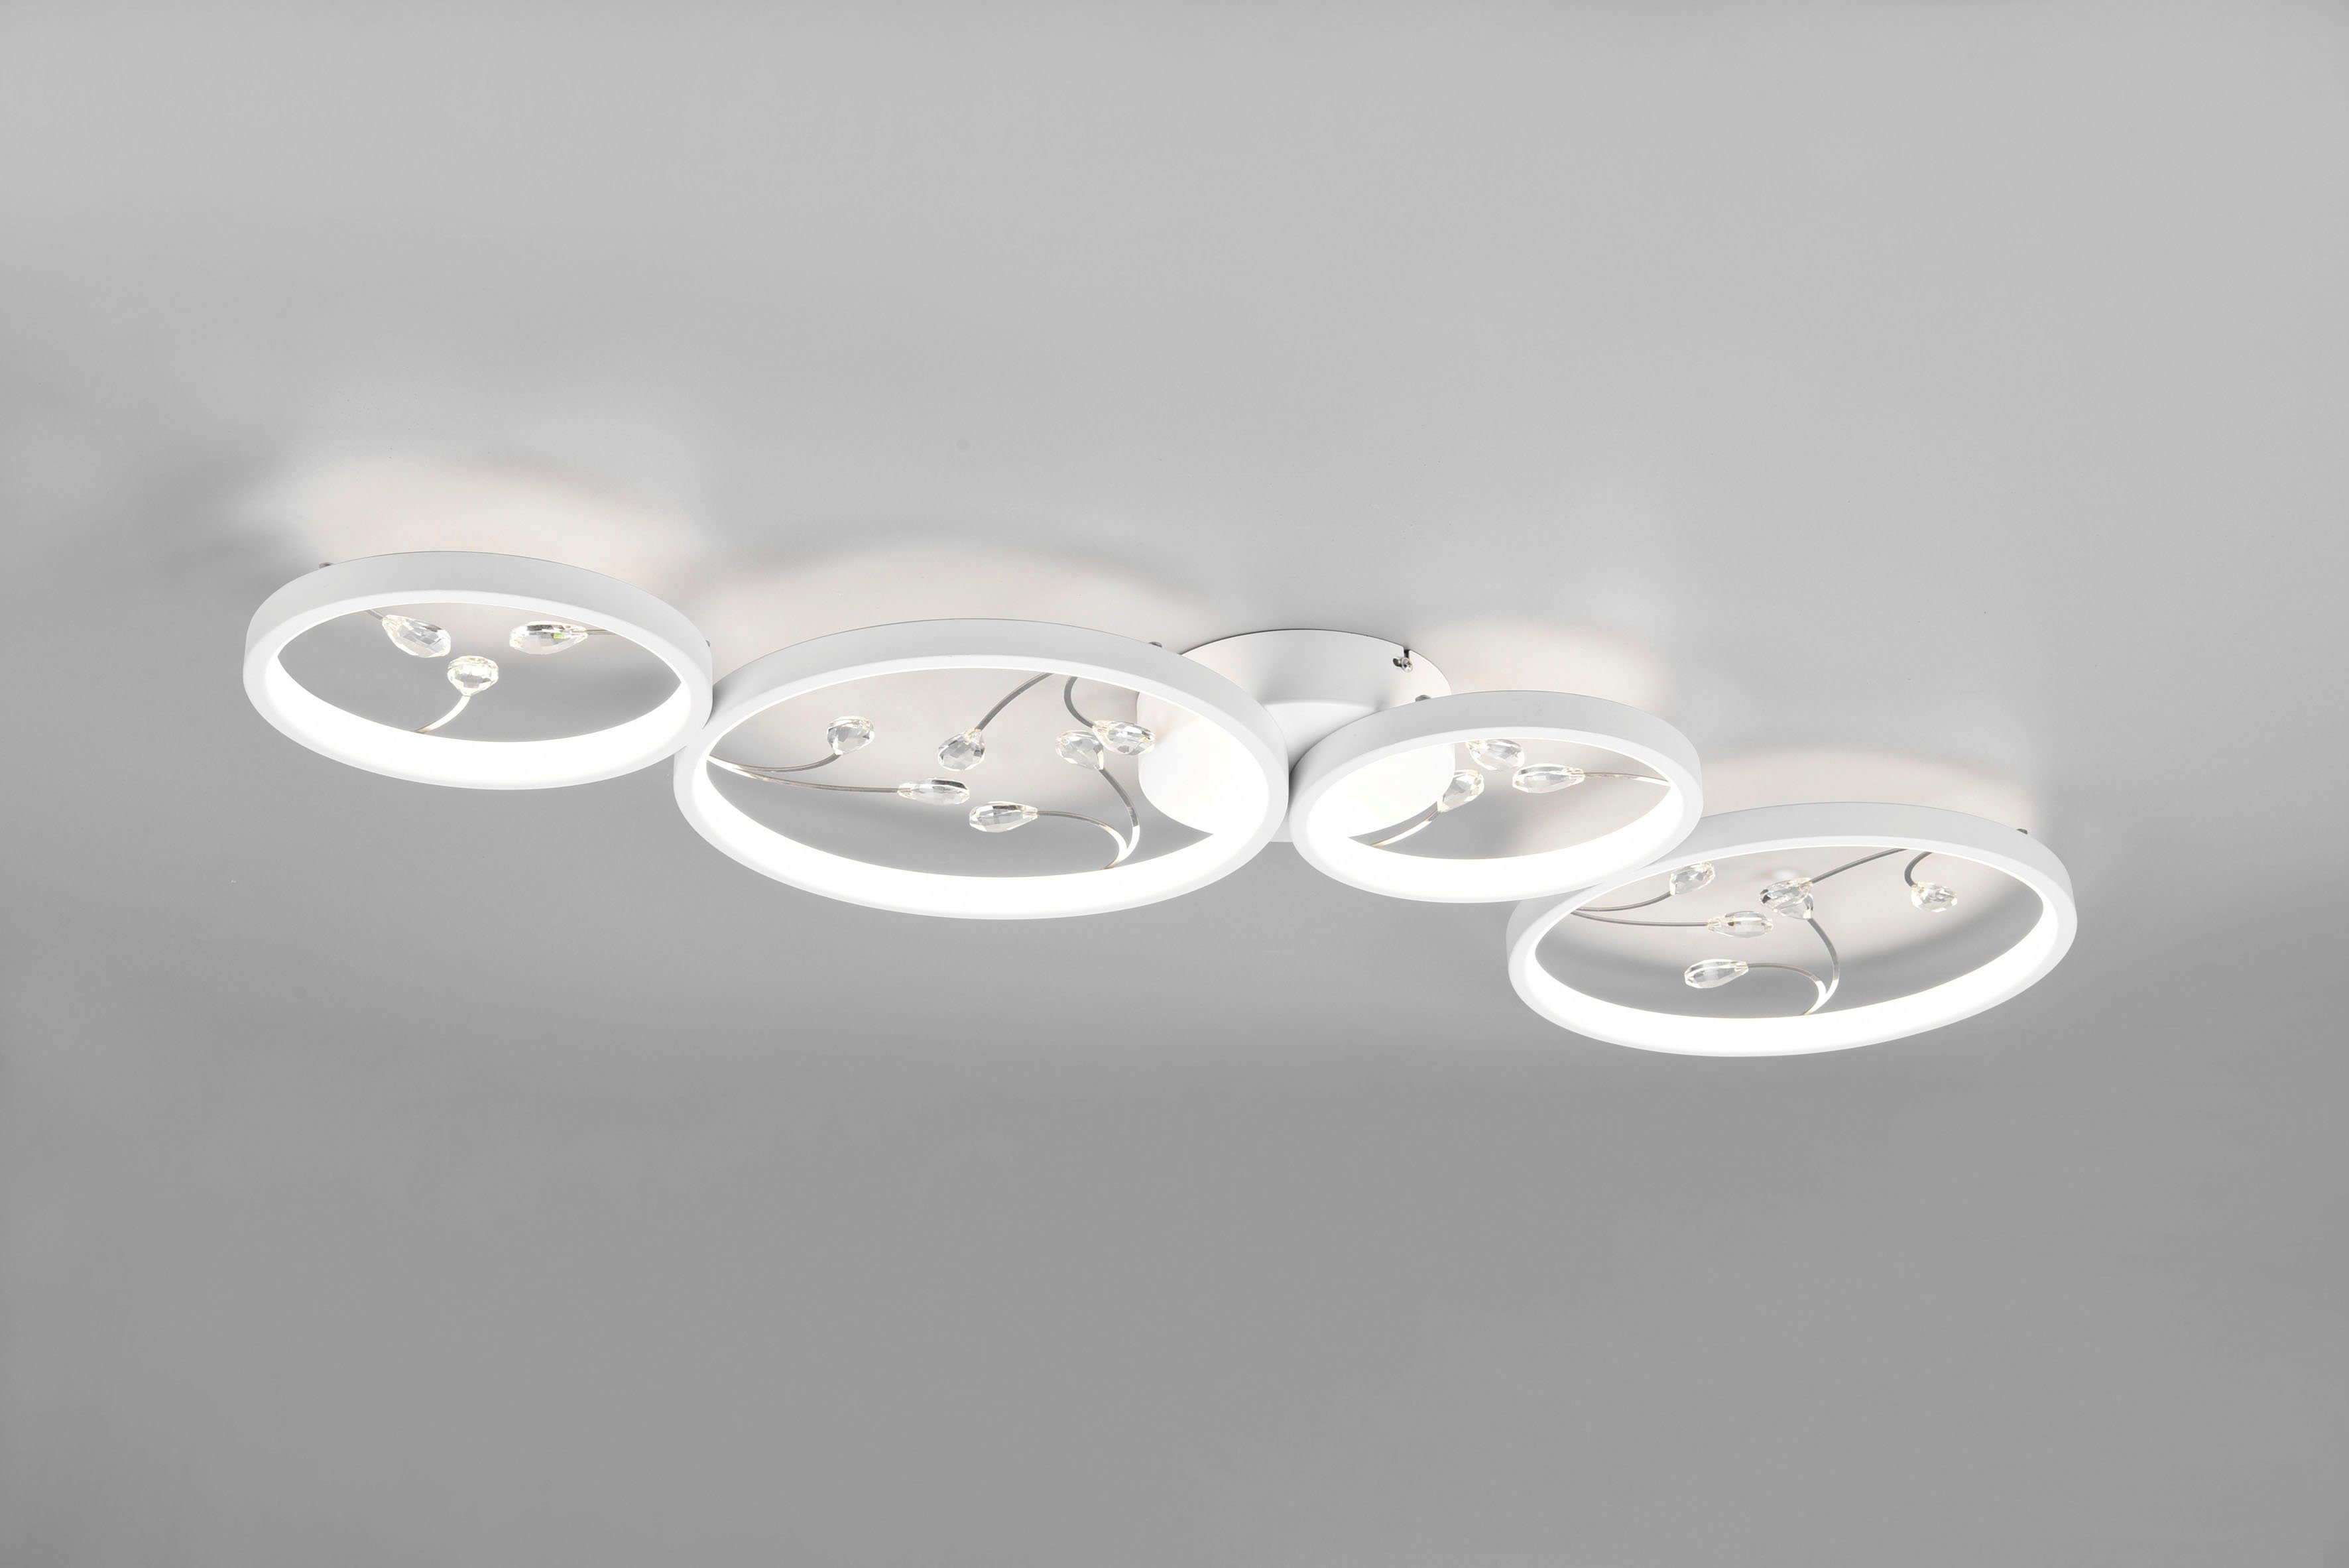 TRIO Leuchten LED Deckenleuchte integriert, Groovy, Dimmfunktion, Helligkeitsstufen, Dimmstufen, LED LED mehrere Glas-Deko, 4800 37W Neutralweiß, Lumen Deckenlampe fest 3 4000K mit